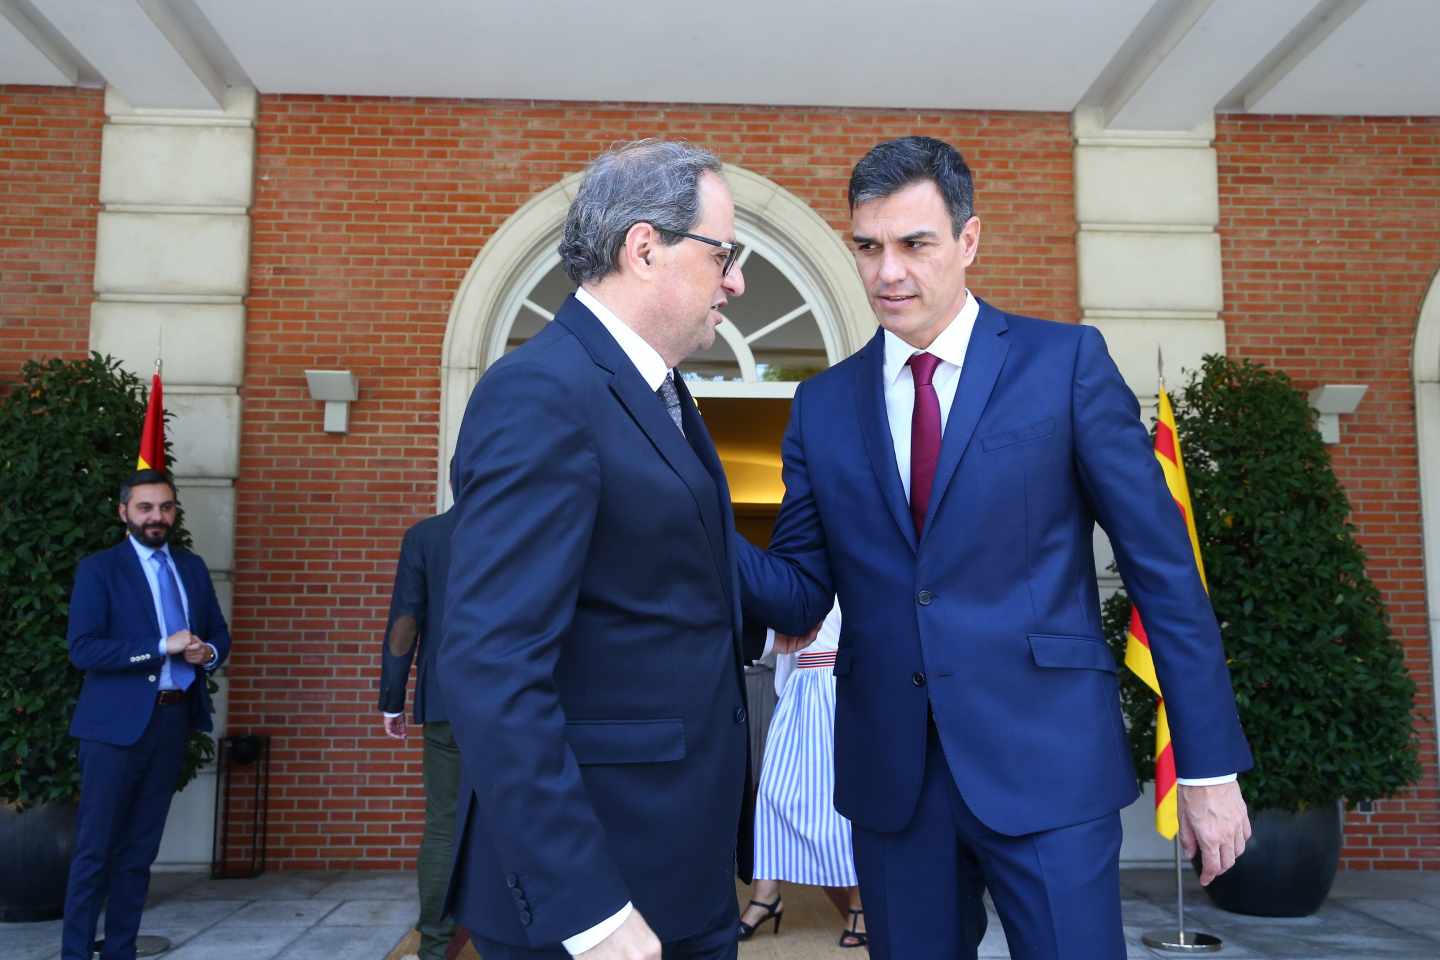 El president de la Generalitat, Quim Torra, y el presidente de Gobierno, Pedro Sánchez, el pasado agosto en la Moncloa.